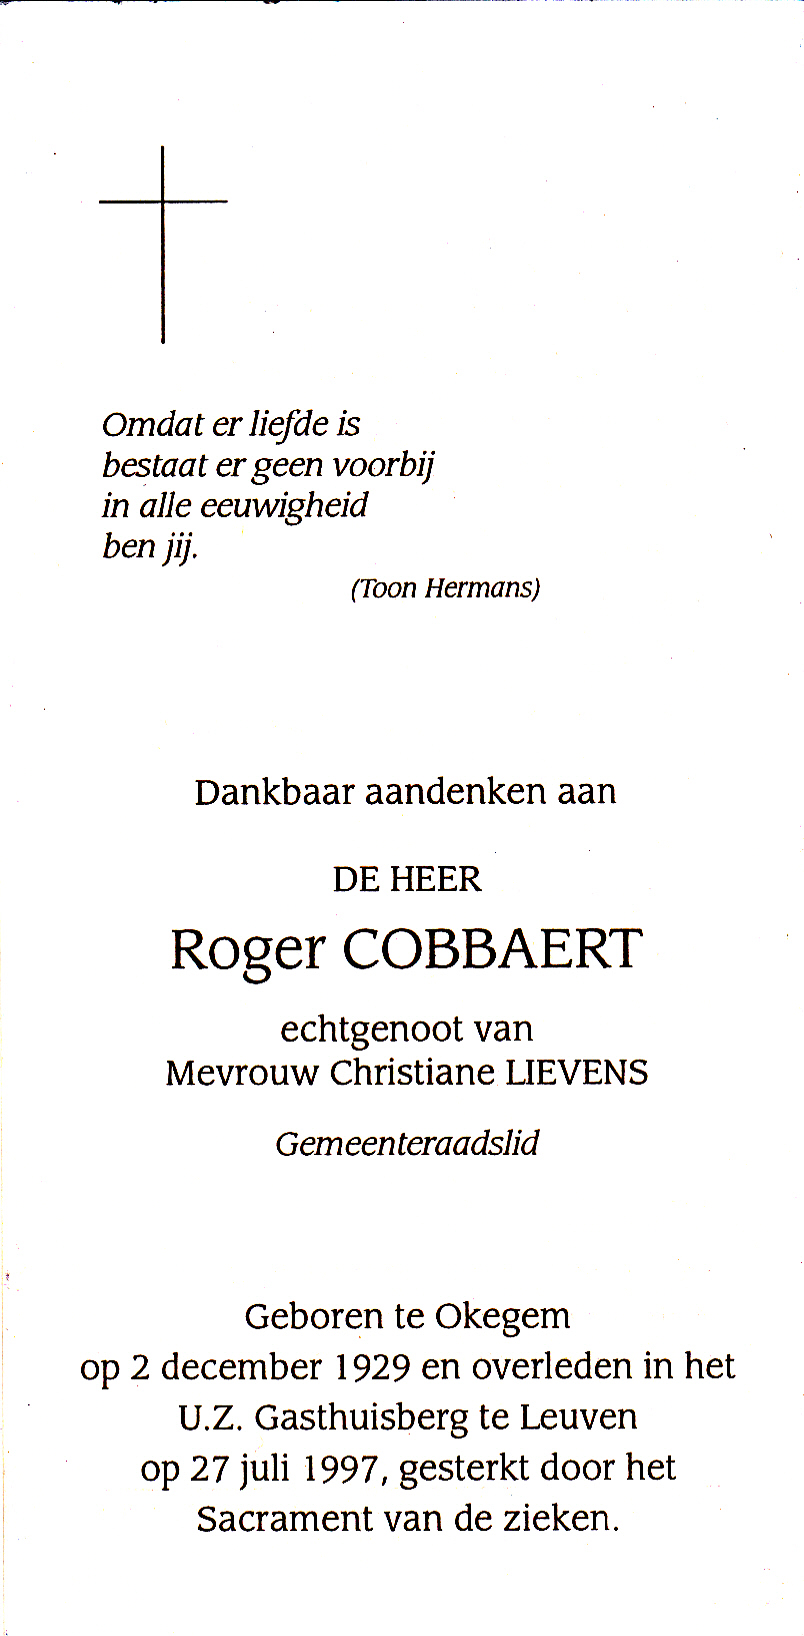 Cobbaert Roger 